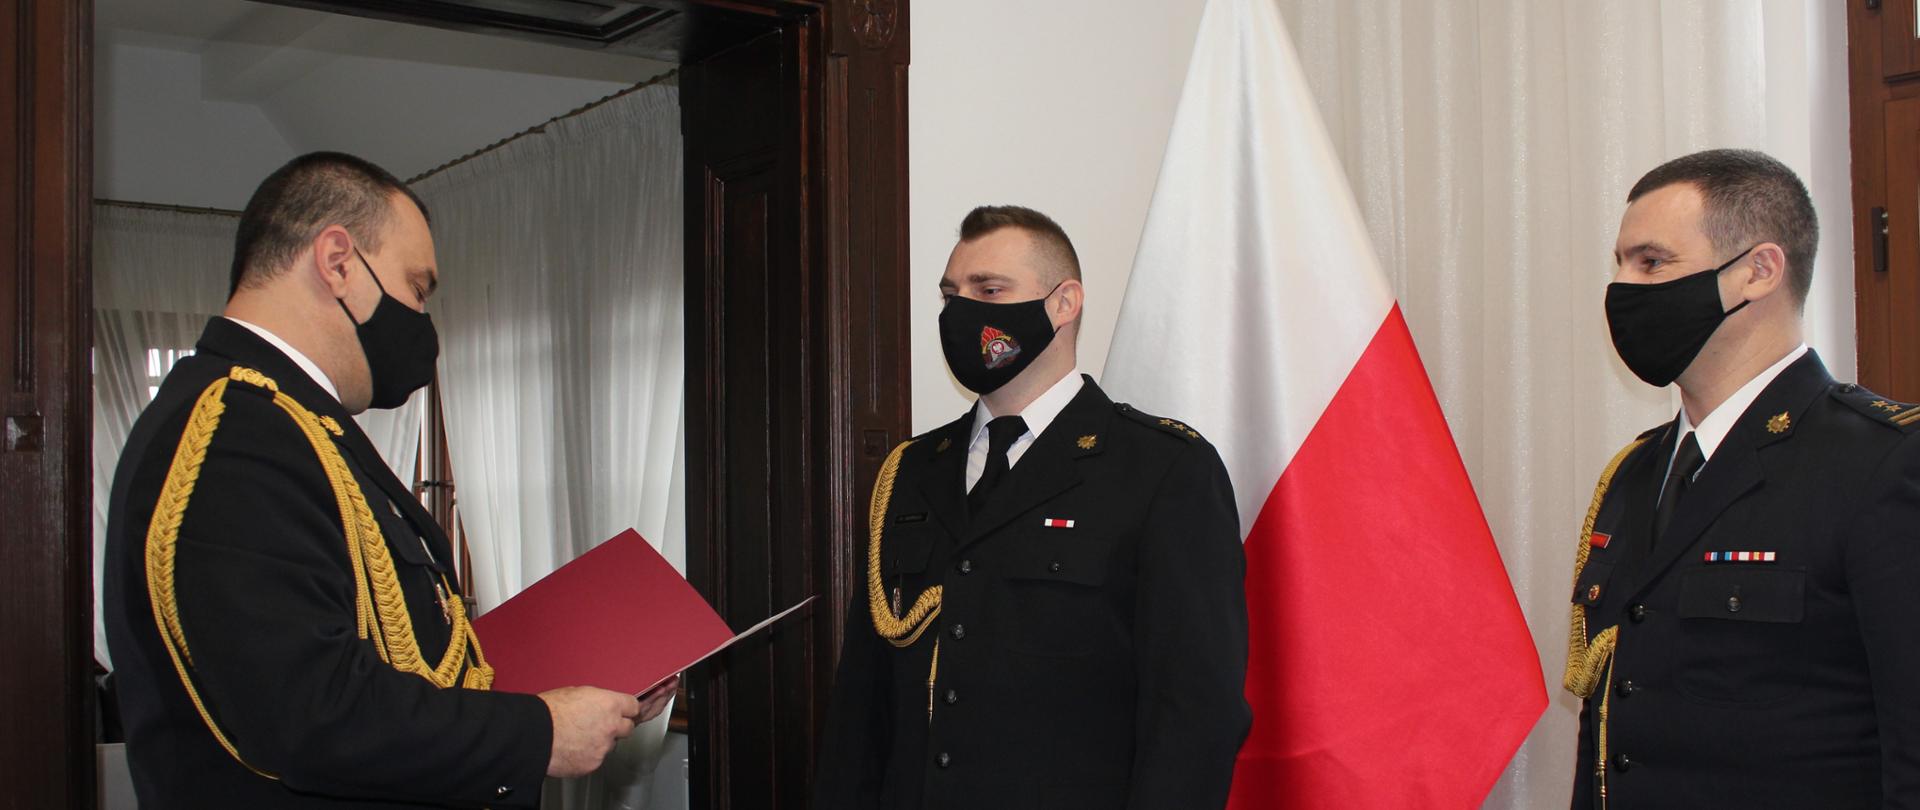 na zdjęciu trzech funkcjonariuszy - nadbrygadier Komoszyński odczytuje decyzję powołującą nowego zastępcę w obecności brygadiera Szczepanika. 